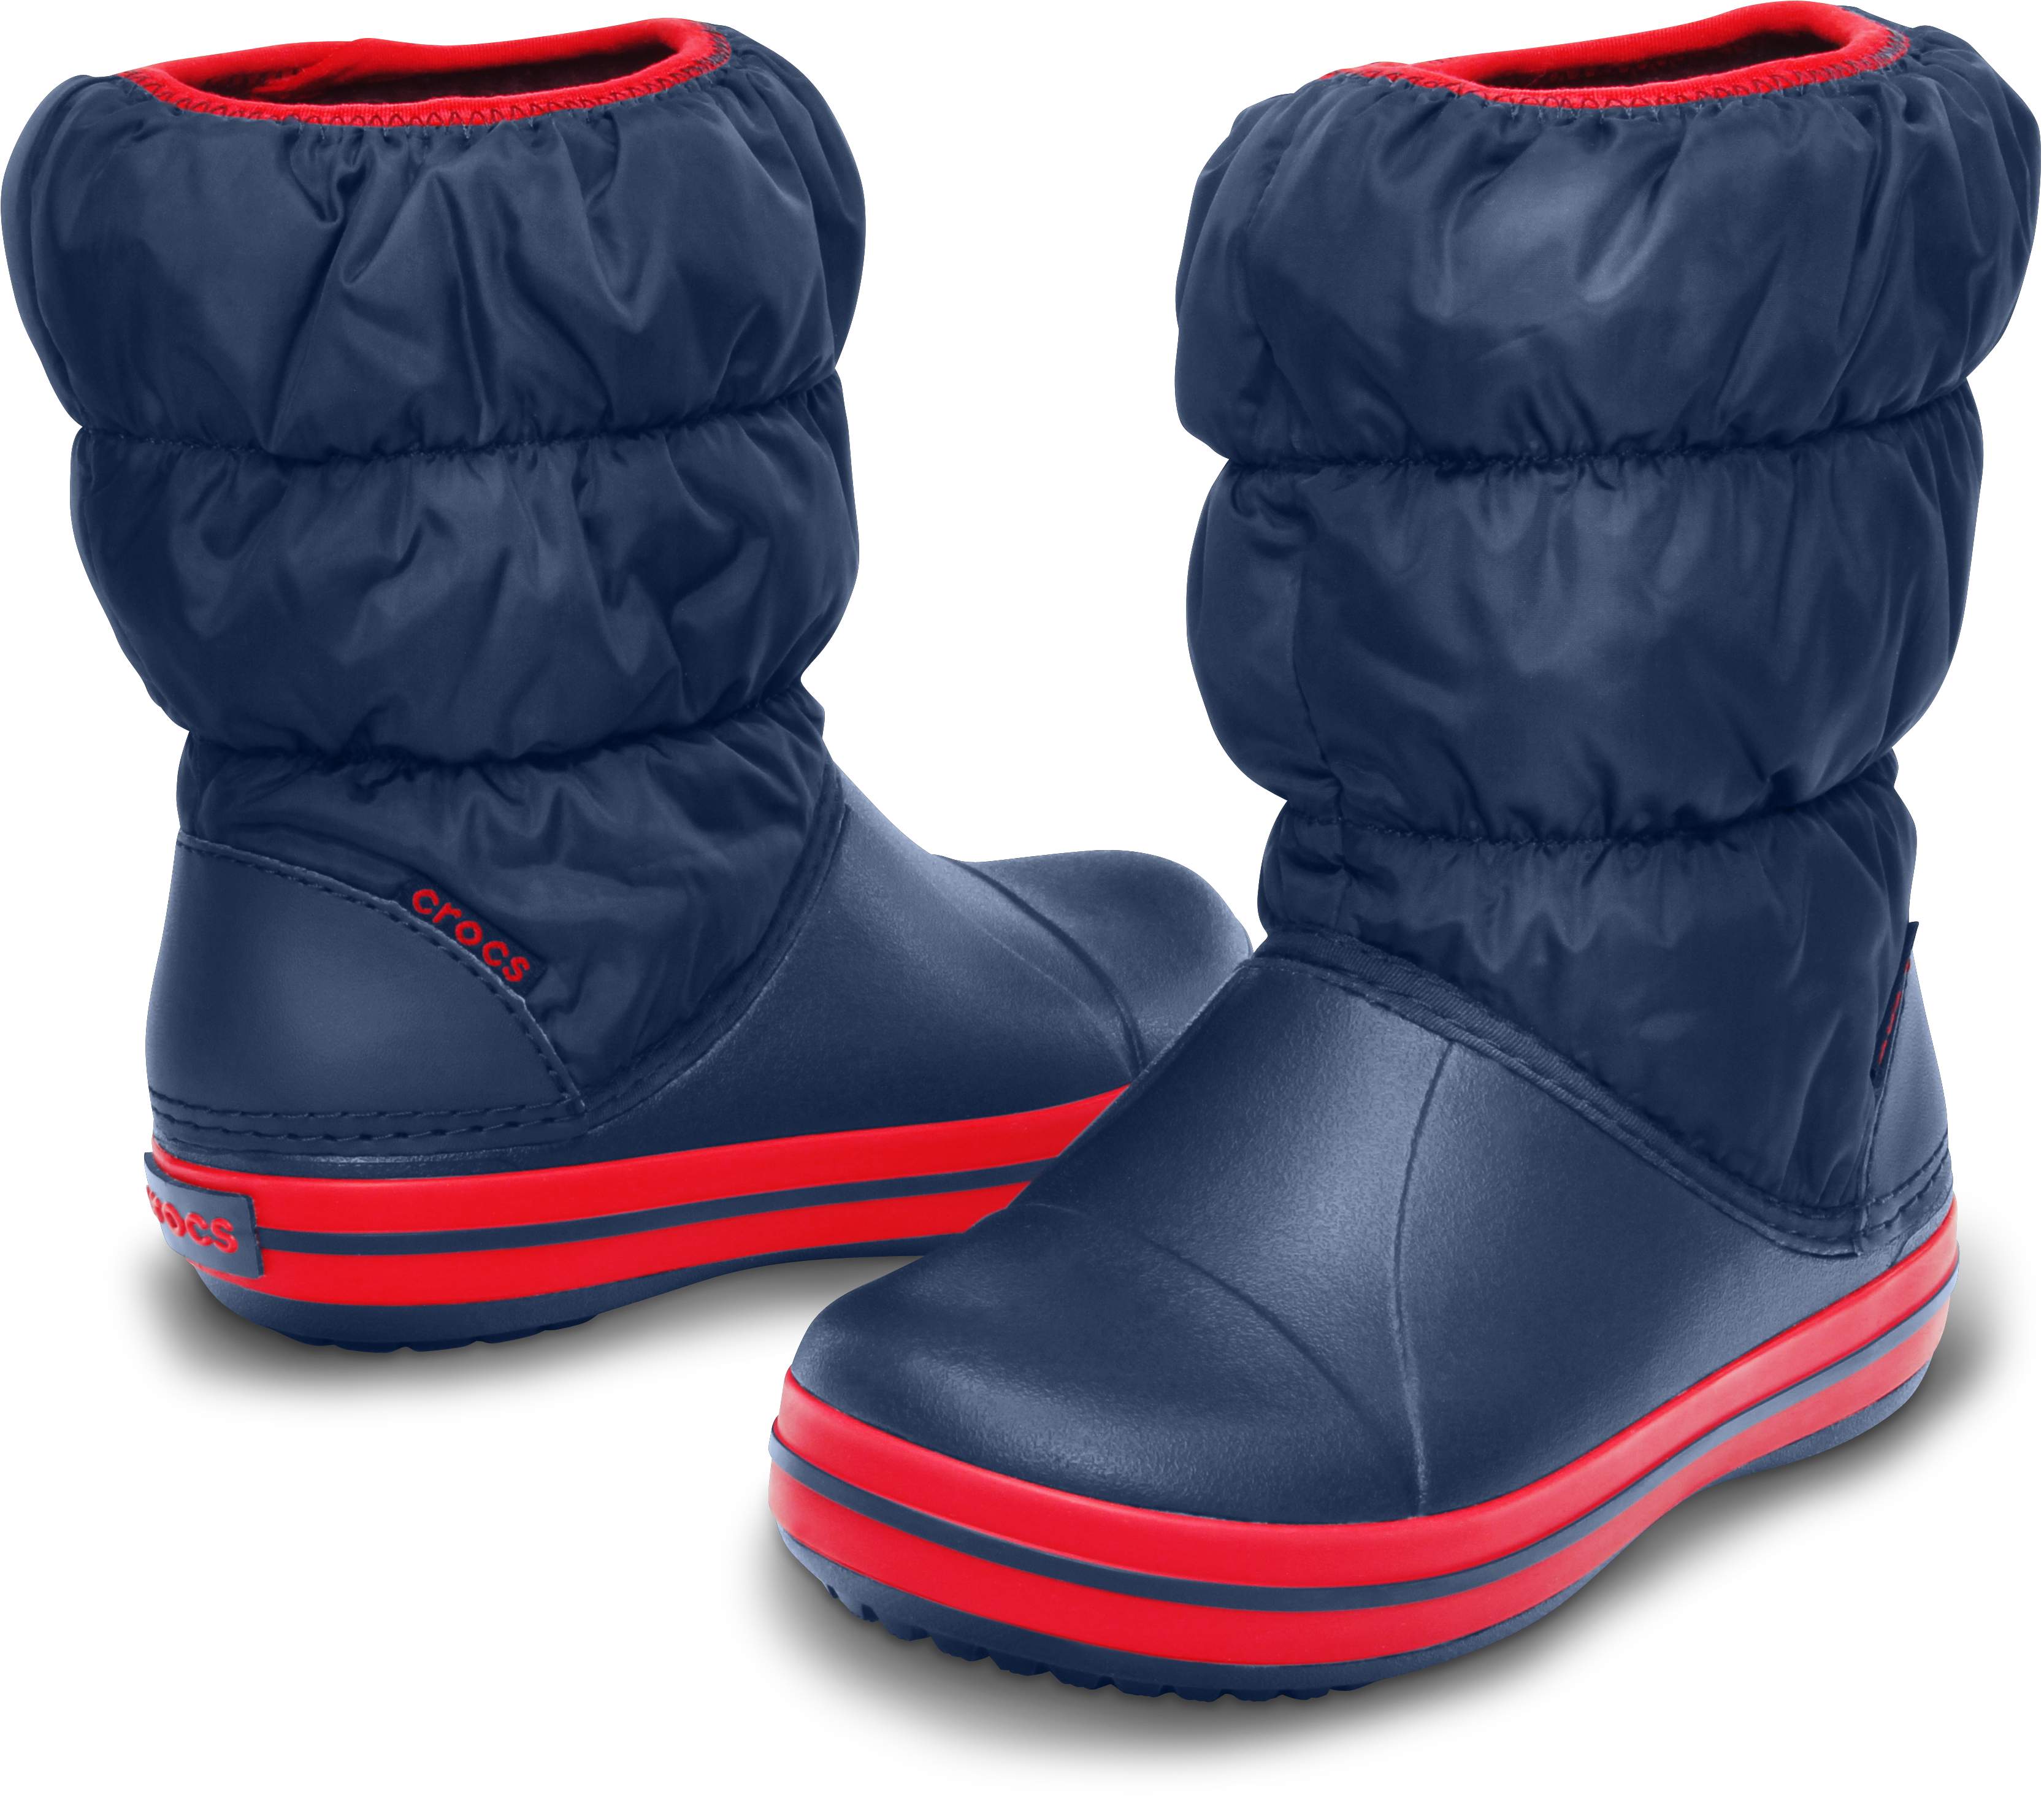 crocs winter boots canada